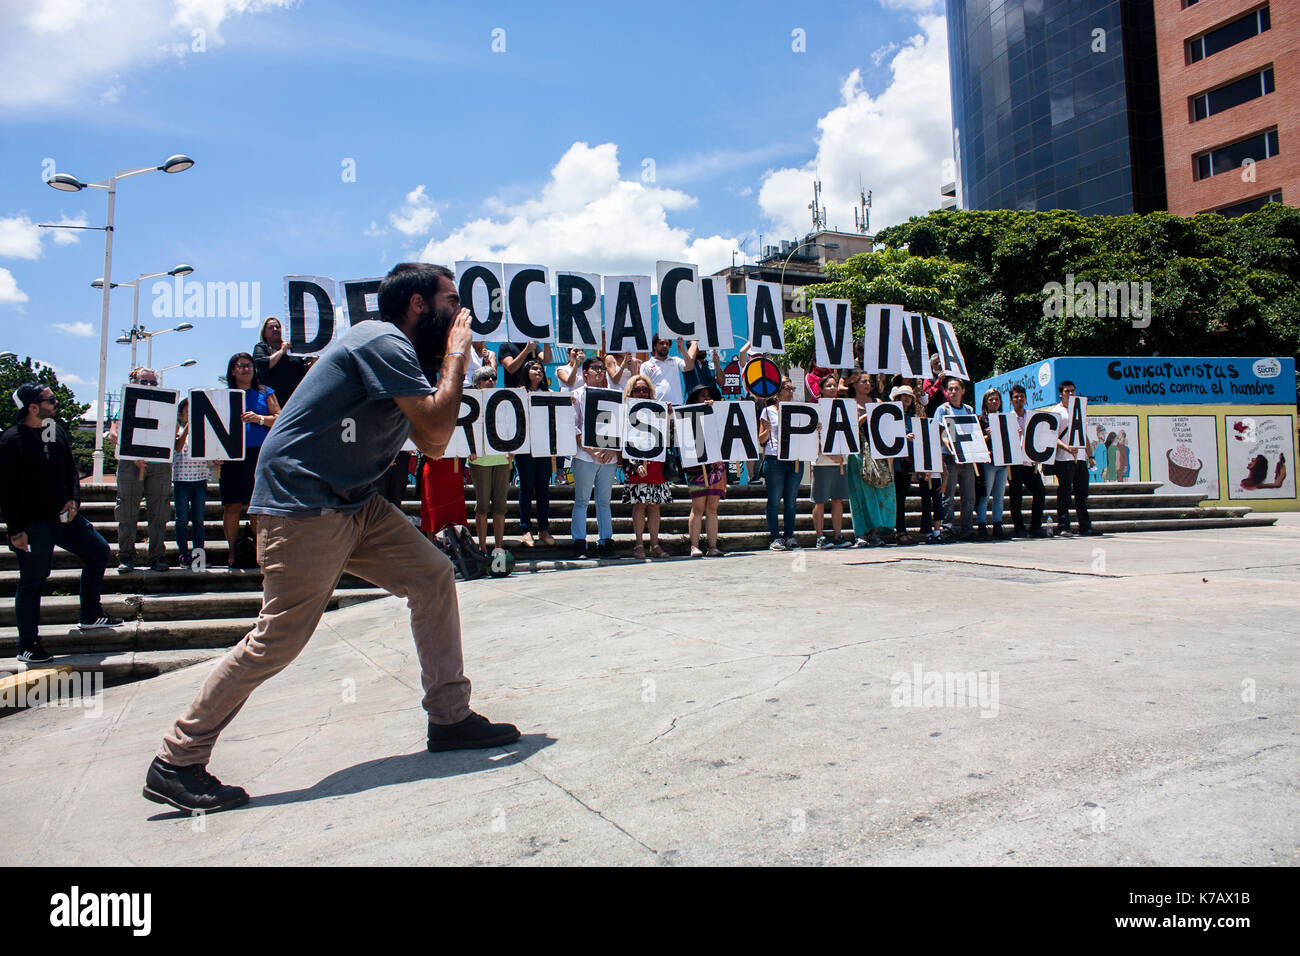 Caracas, Venezuela, 15. September 2017. Eine Zivilgesellschaft Gruppe bekannt als Dale Letra (Lyrik) nahmen an einem friedlichen Protest gegen die autoritäre Politik der venezolanischen Regierung. Agustin Garcia/Alamy leben Nachrichten Stockfoto